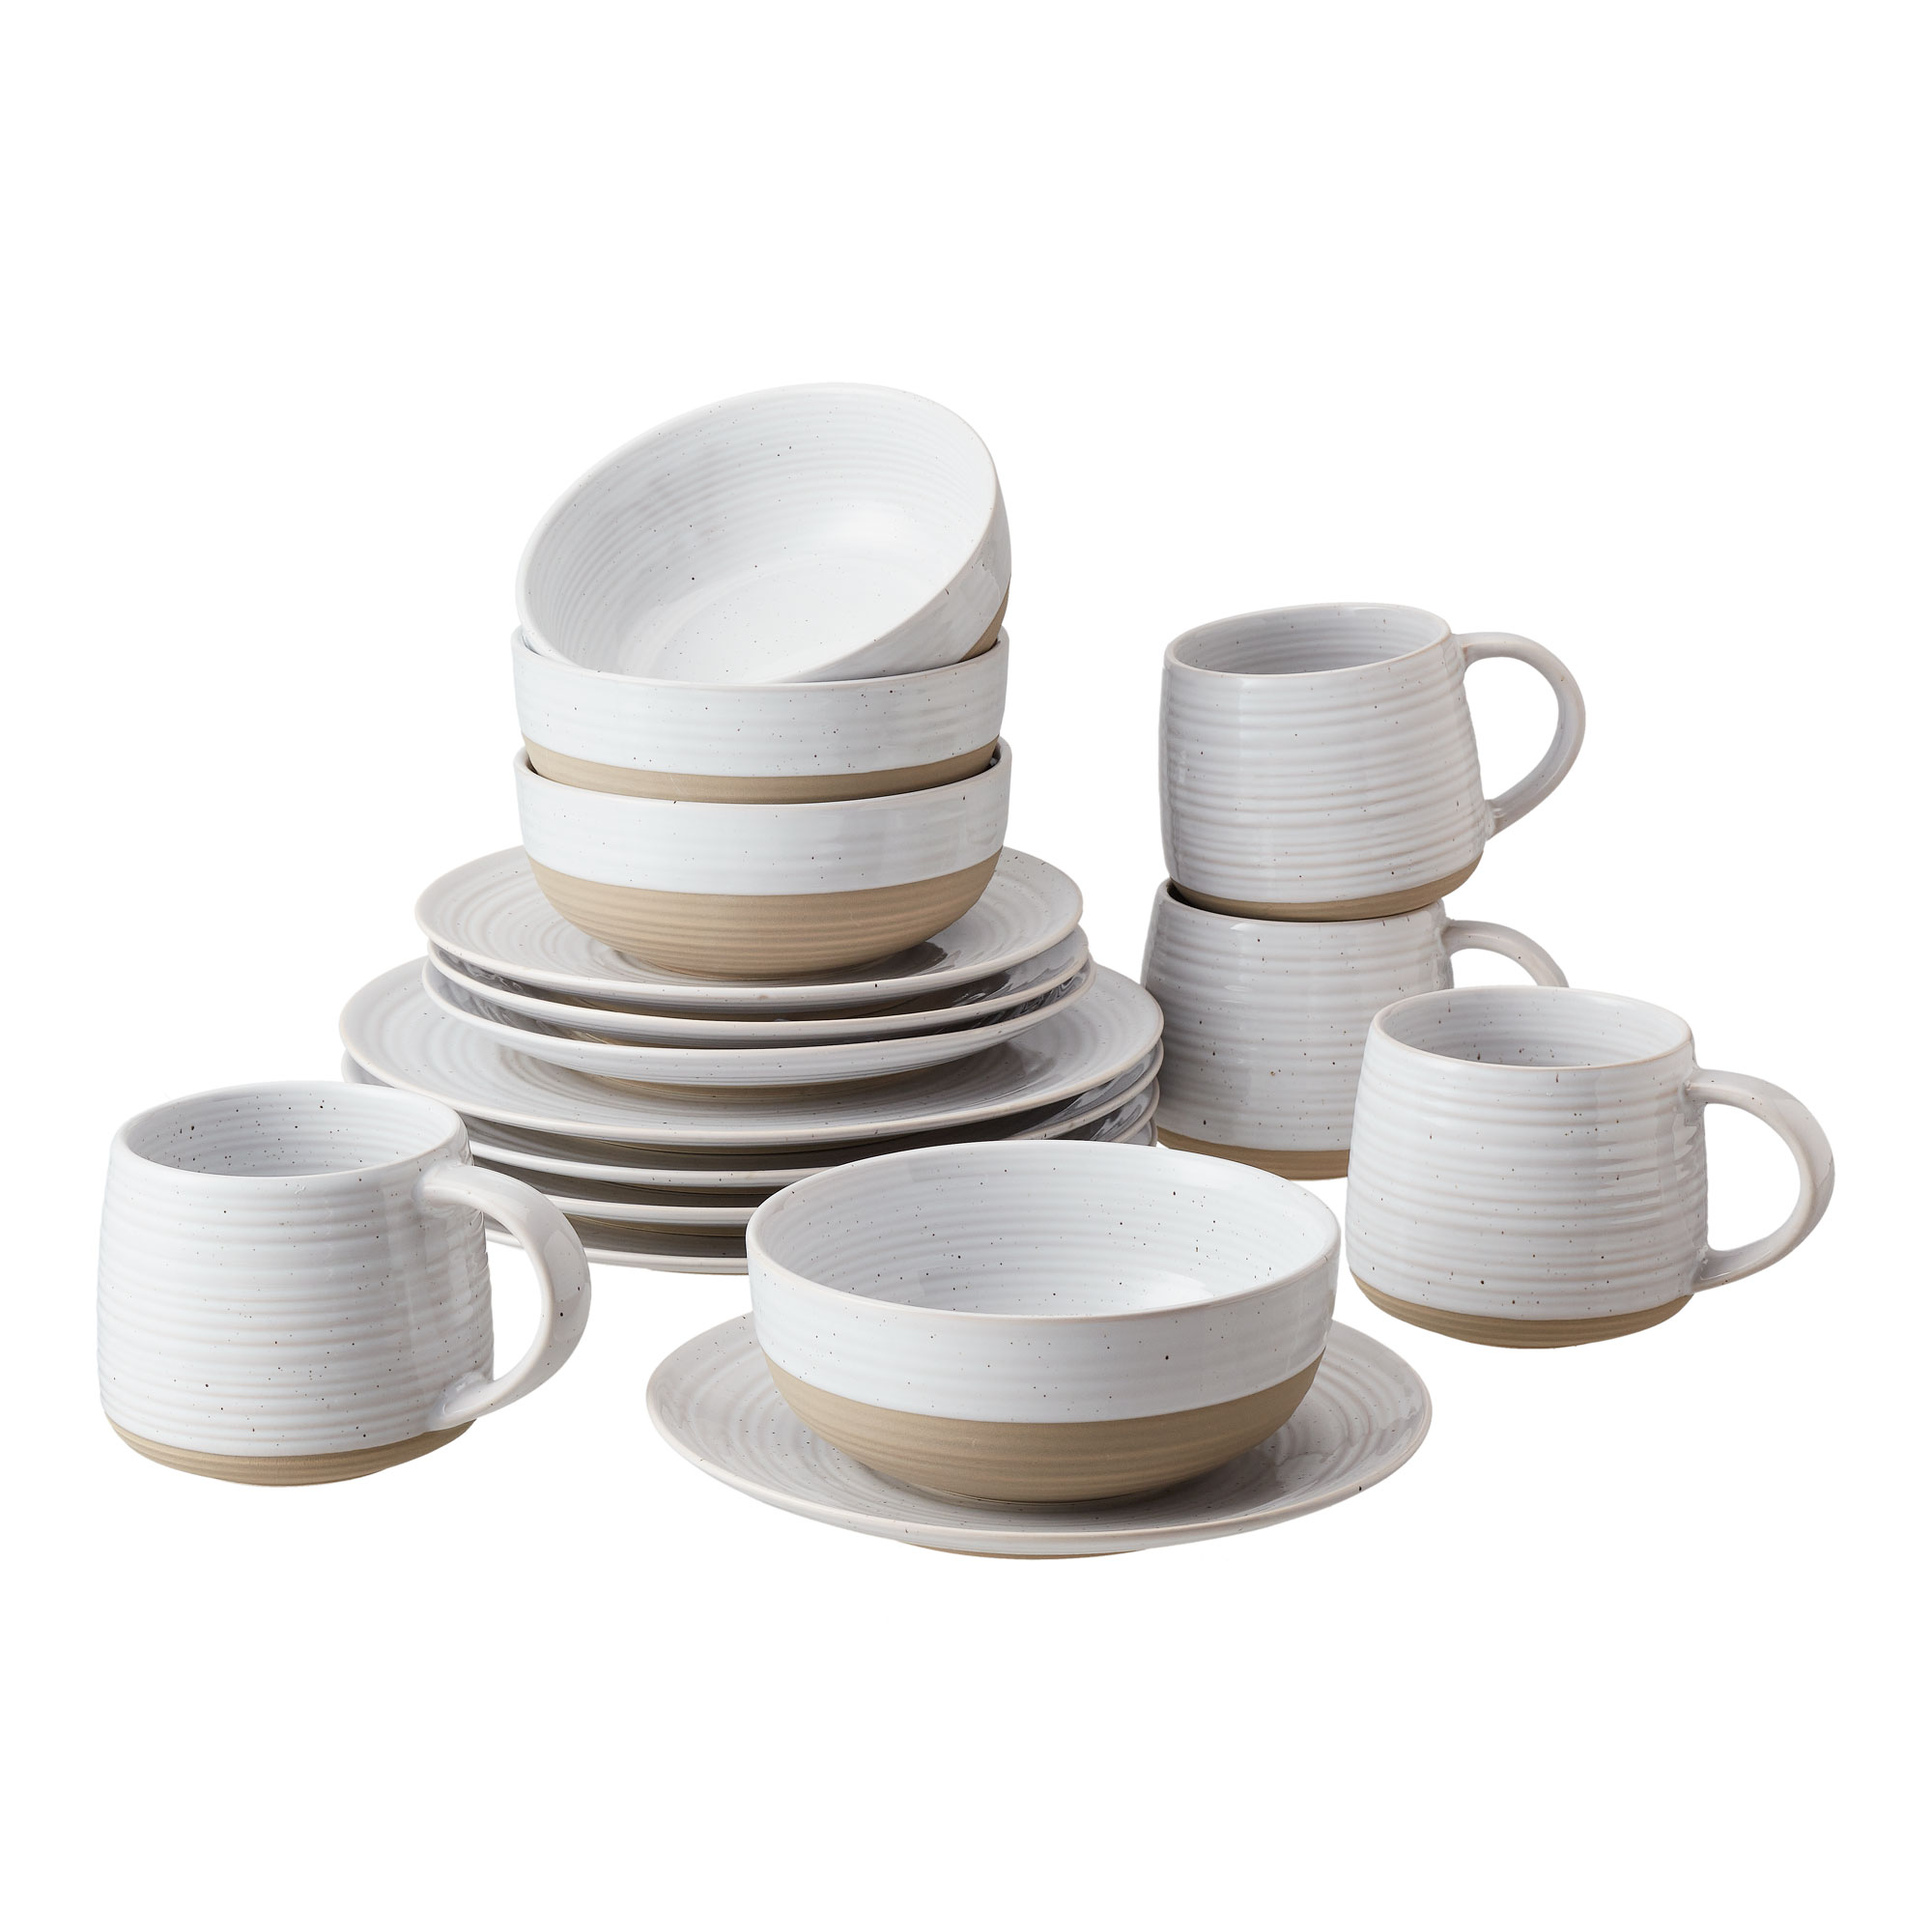 Better Homes & Gardens- Abott White Round Stoneware 16-Piece Dinnerware Set - image 1 of 12